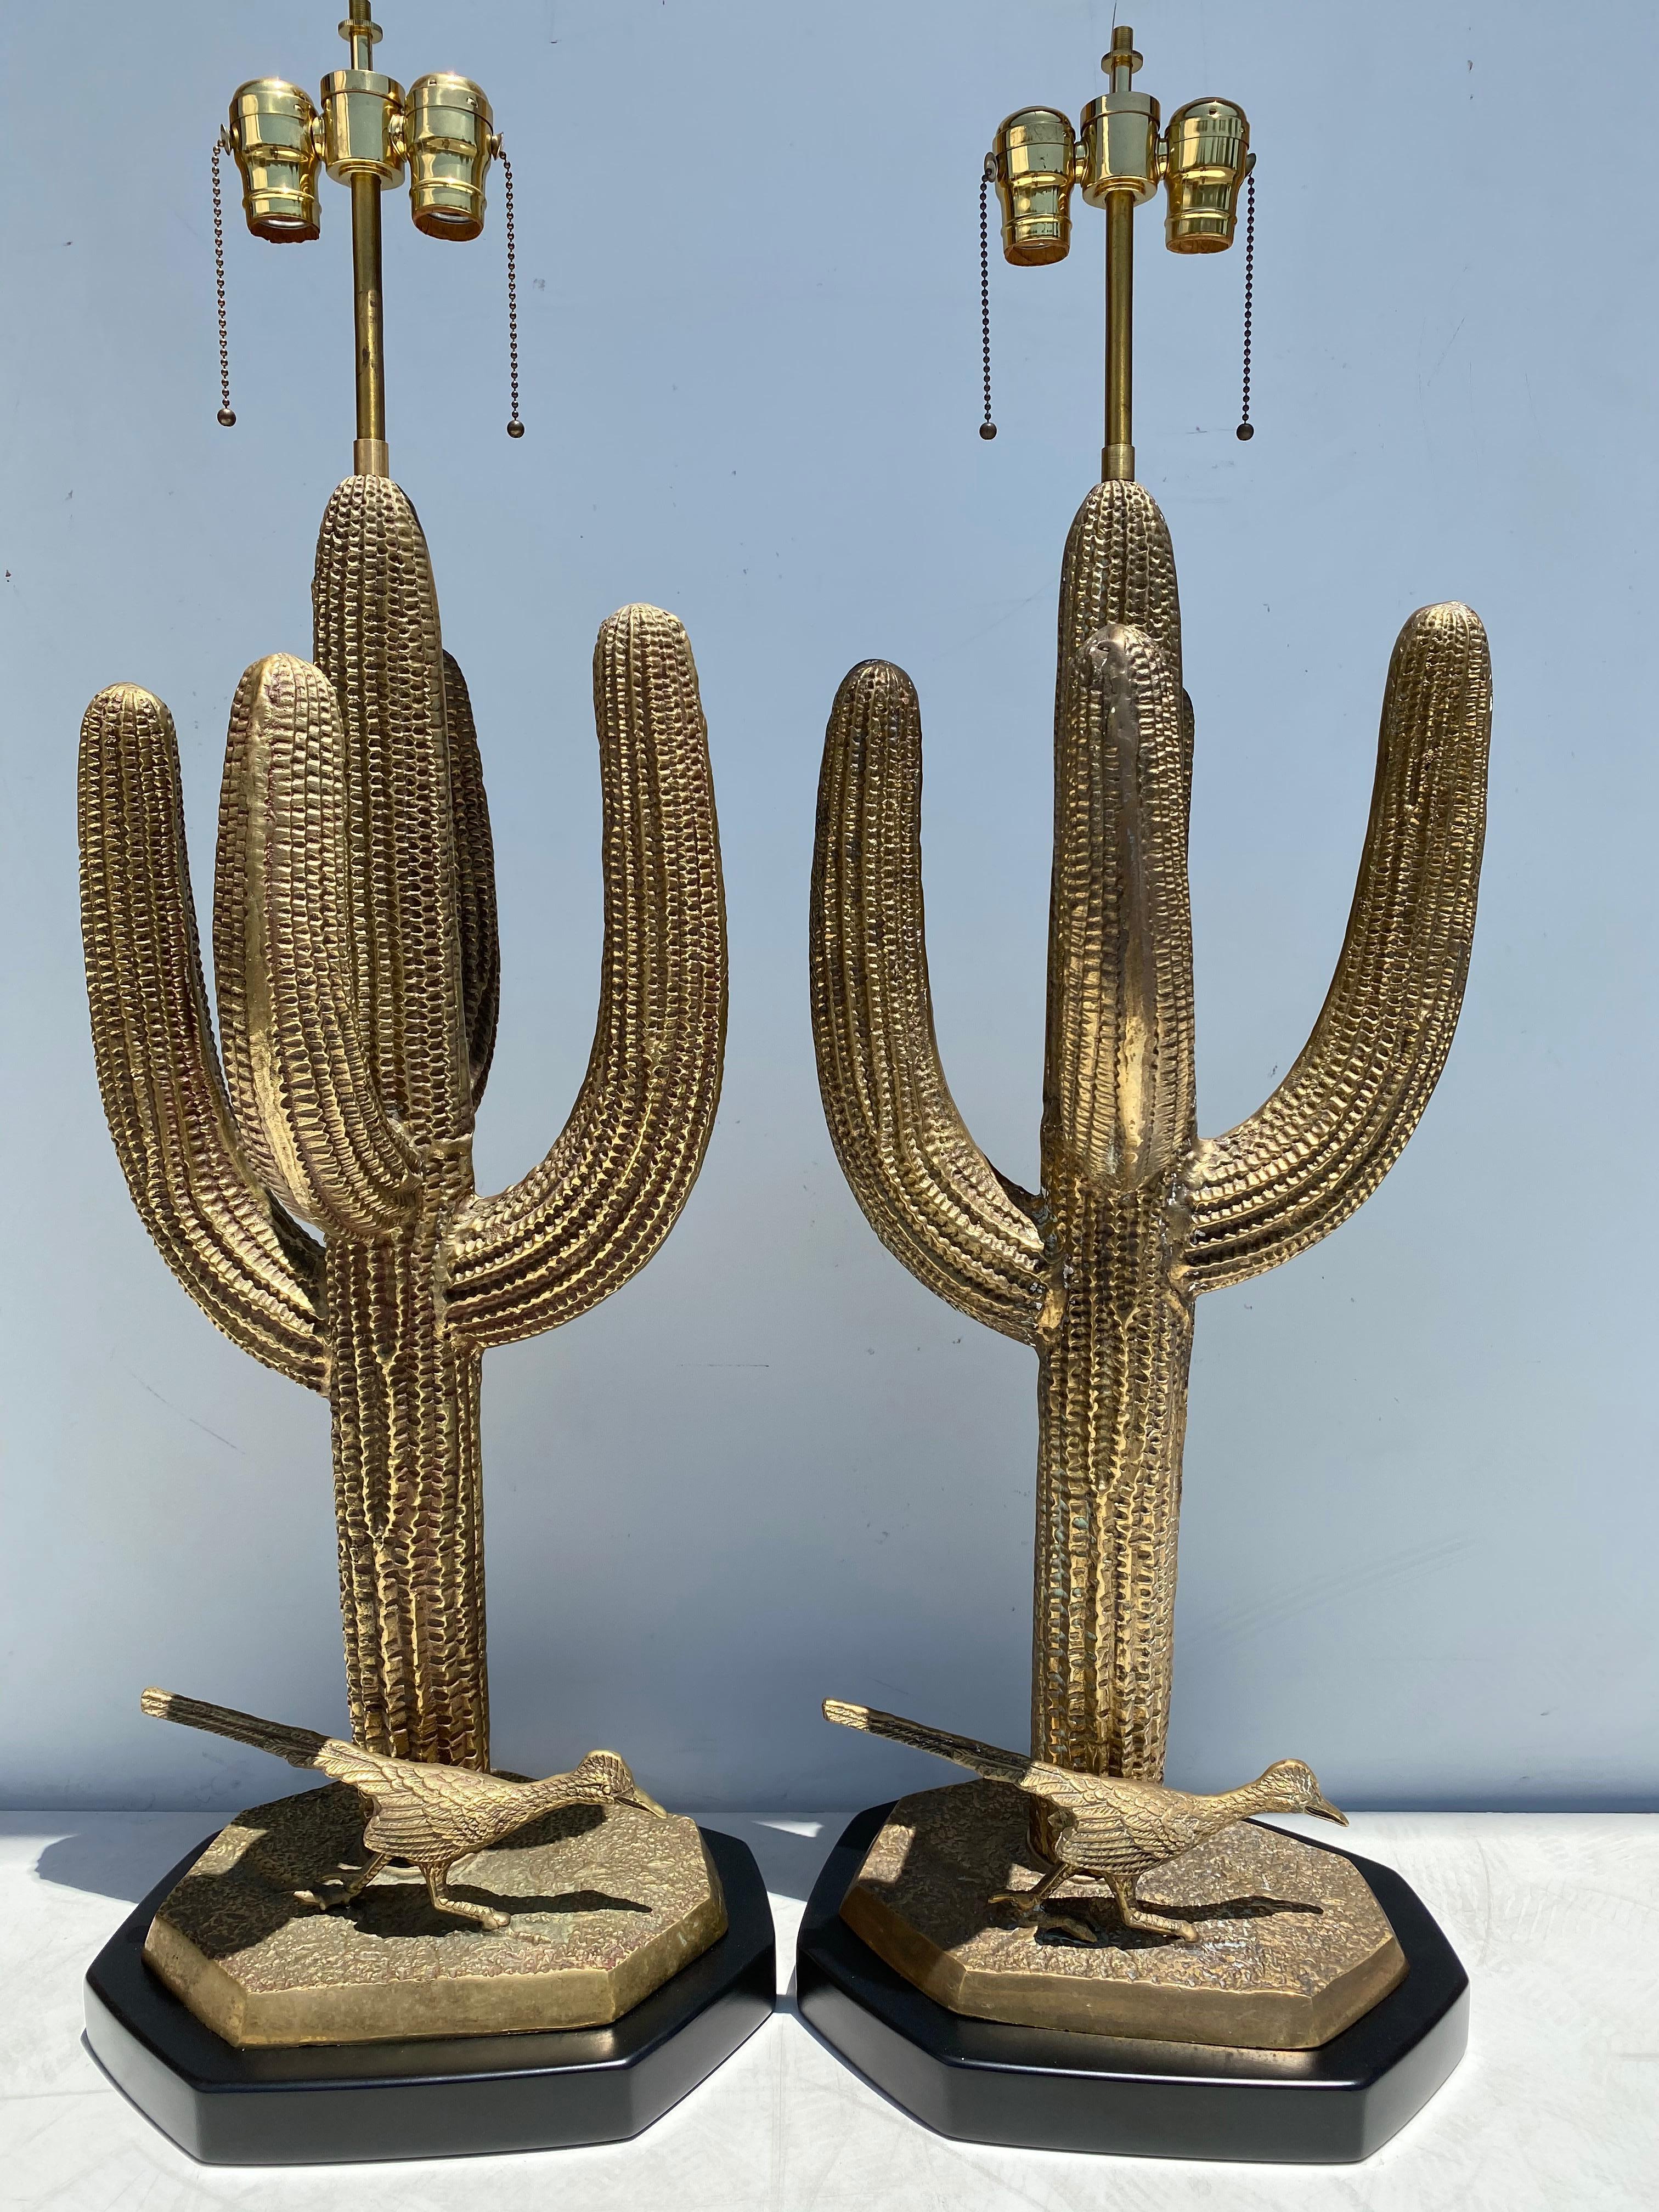 Pair of massive brass Saguaro cactus and roadrunner lamps.